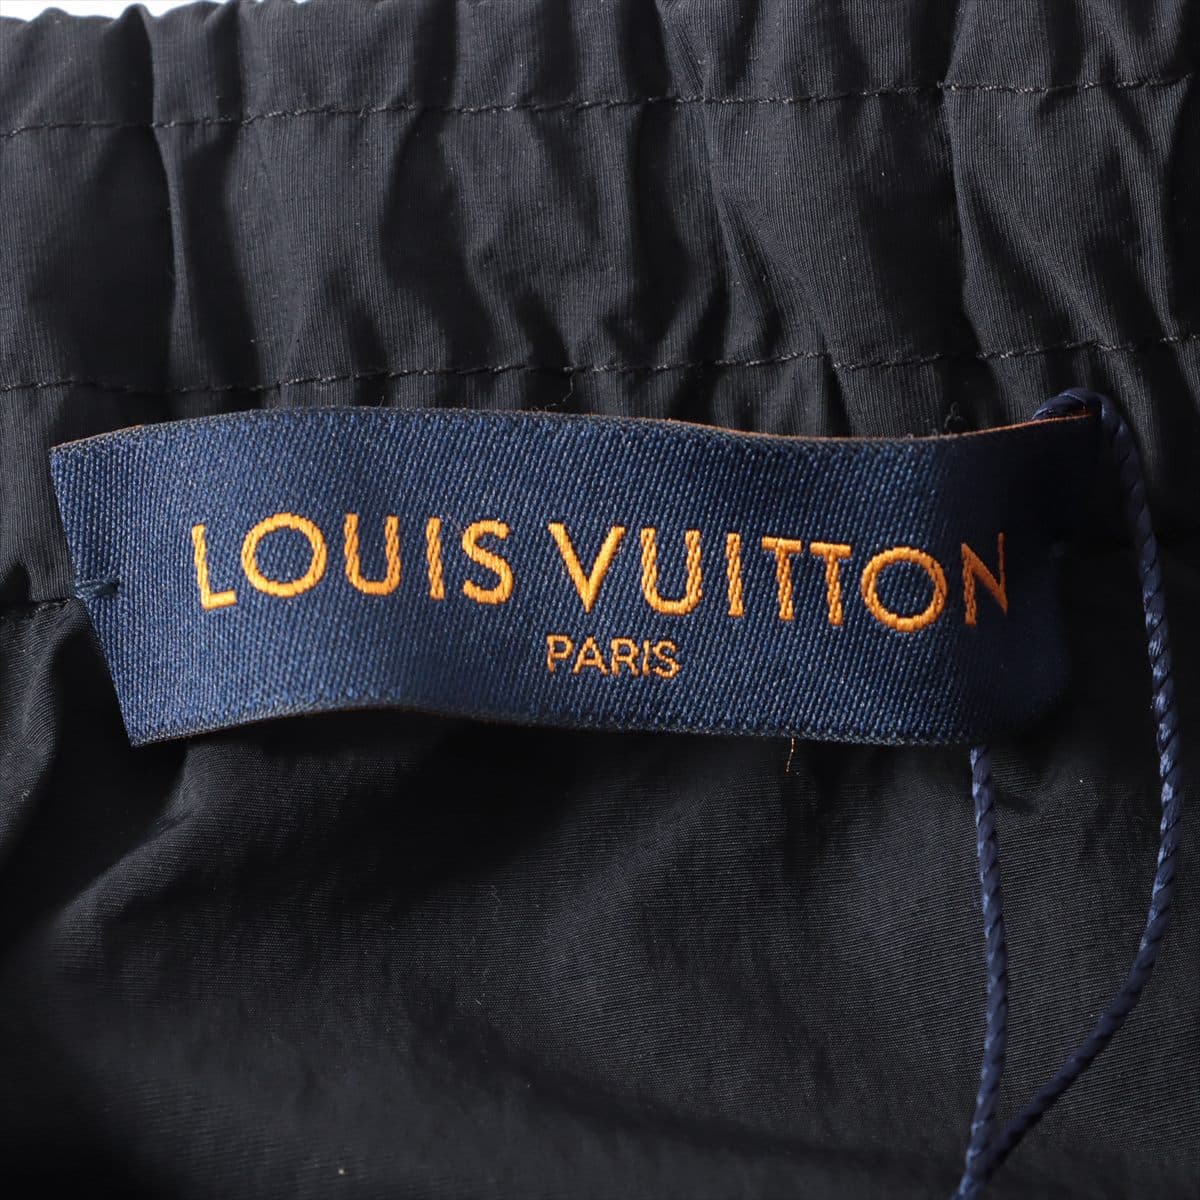 Louis Vuitton LV Circle 20AW Nylon Pants 46 Men's Black  RM202M